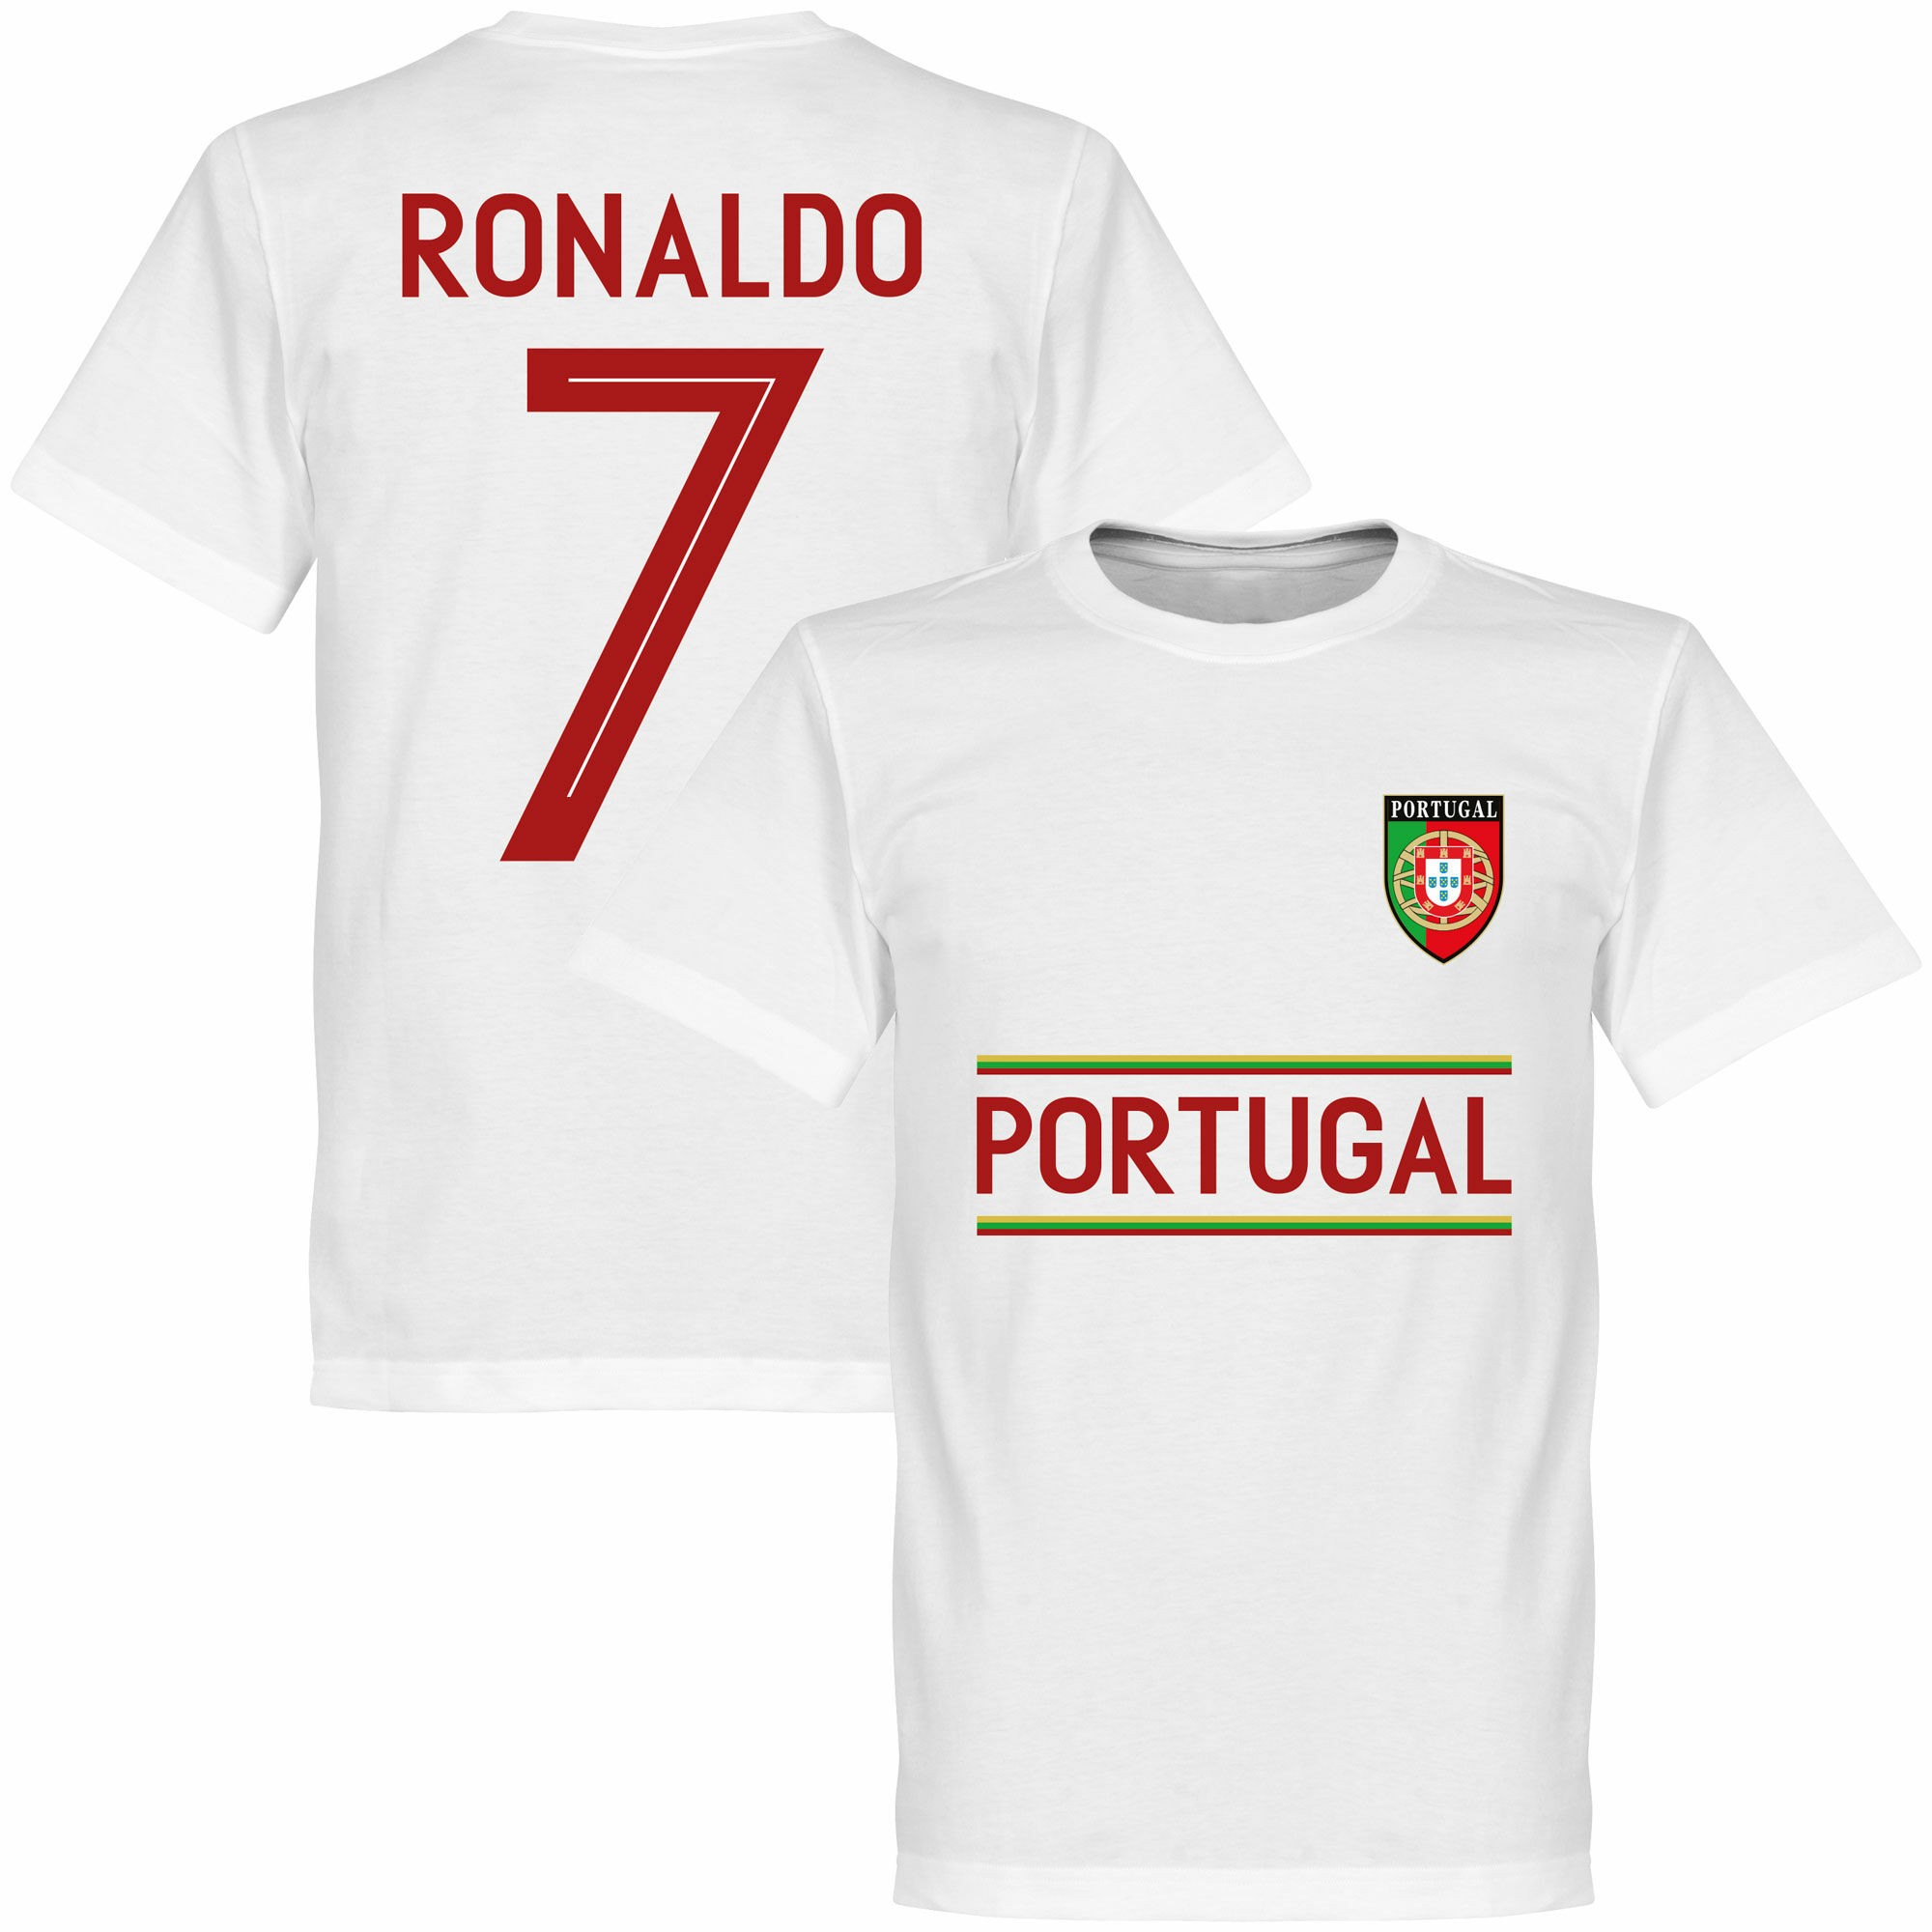 Portugalsko - Tričko - bílé, Ronaldo, číslo 7